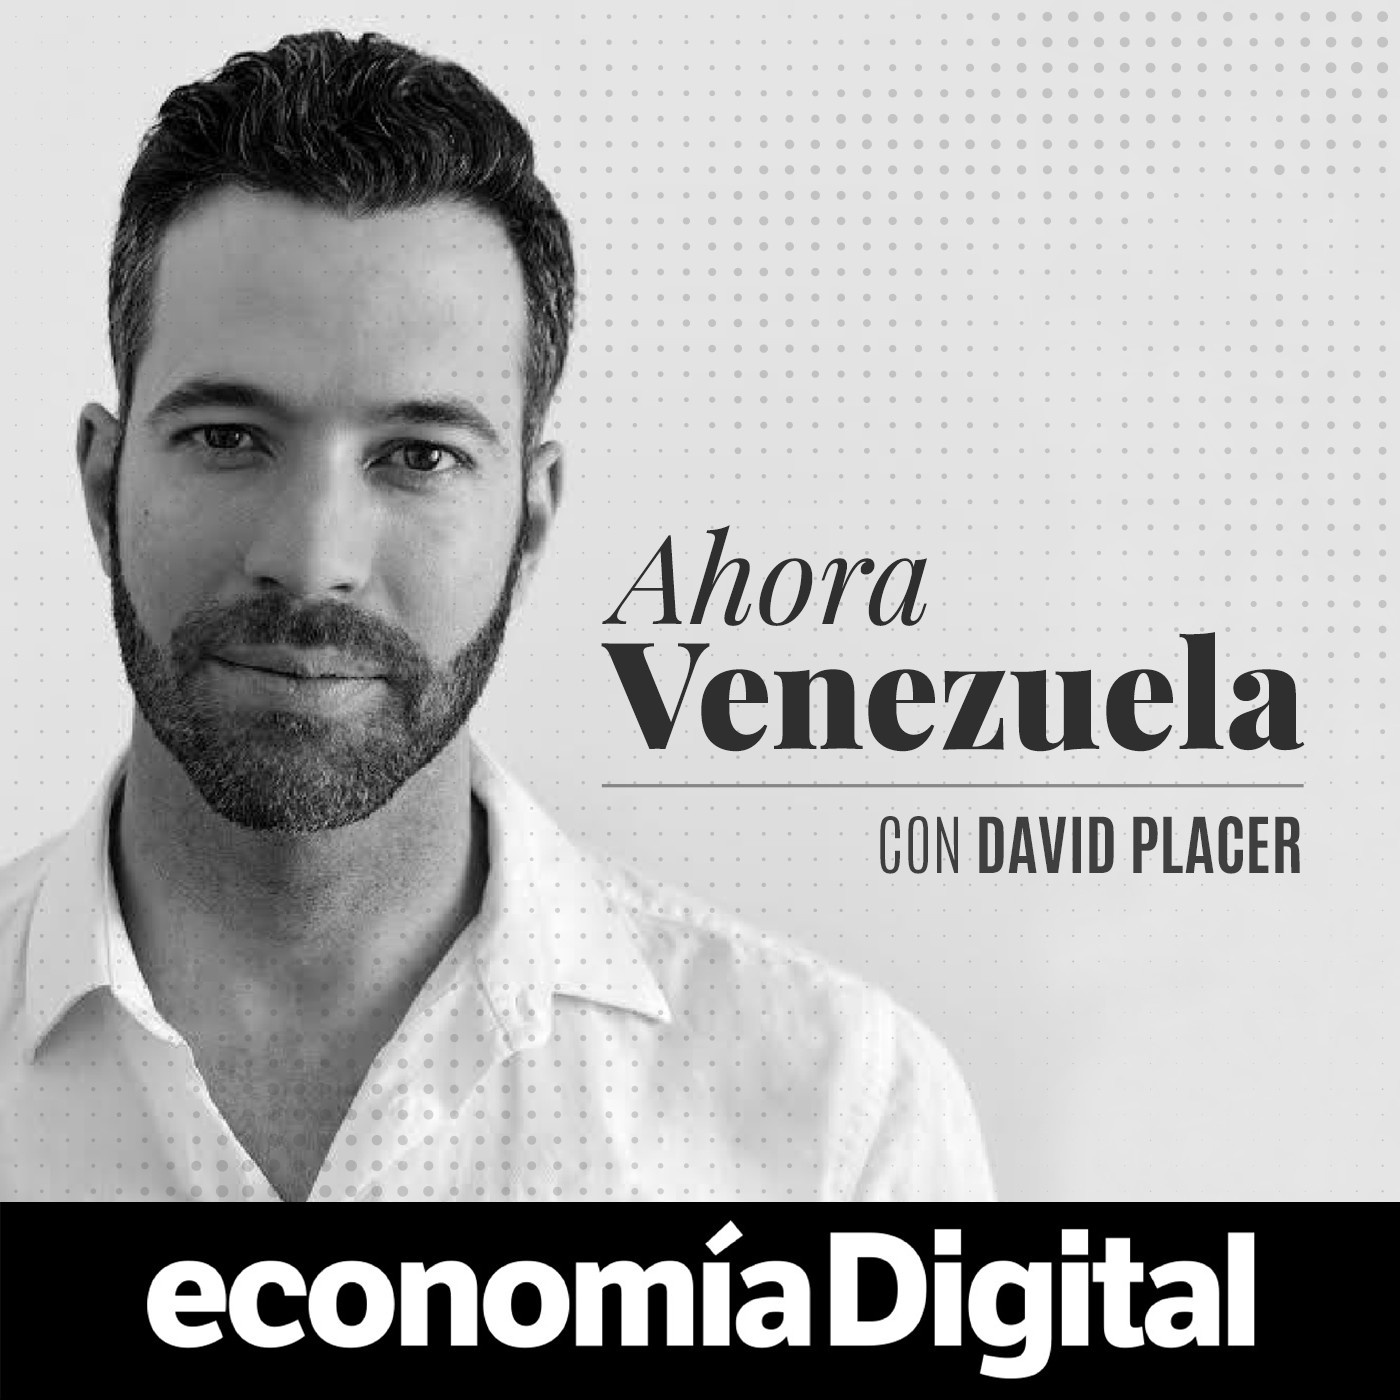 Ahora Venezuela, con David Placer